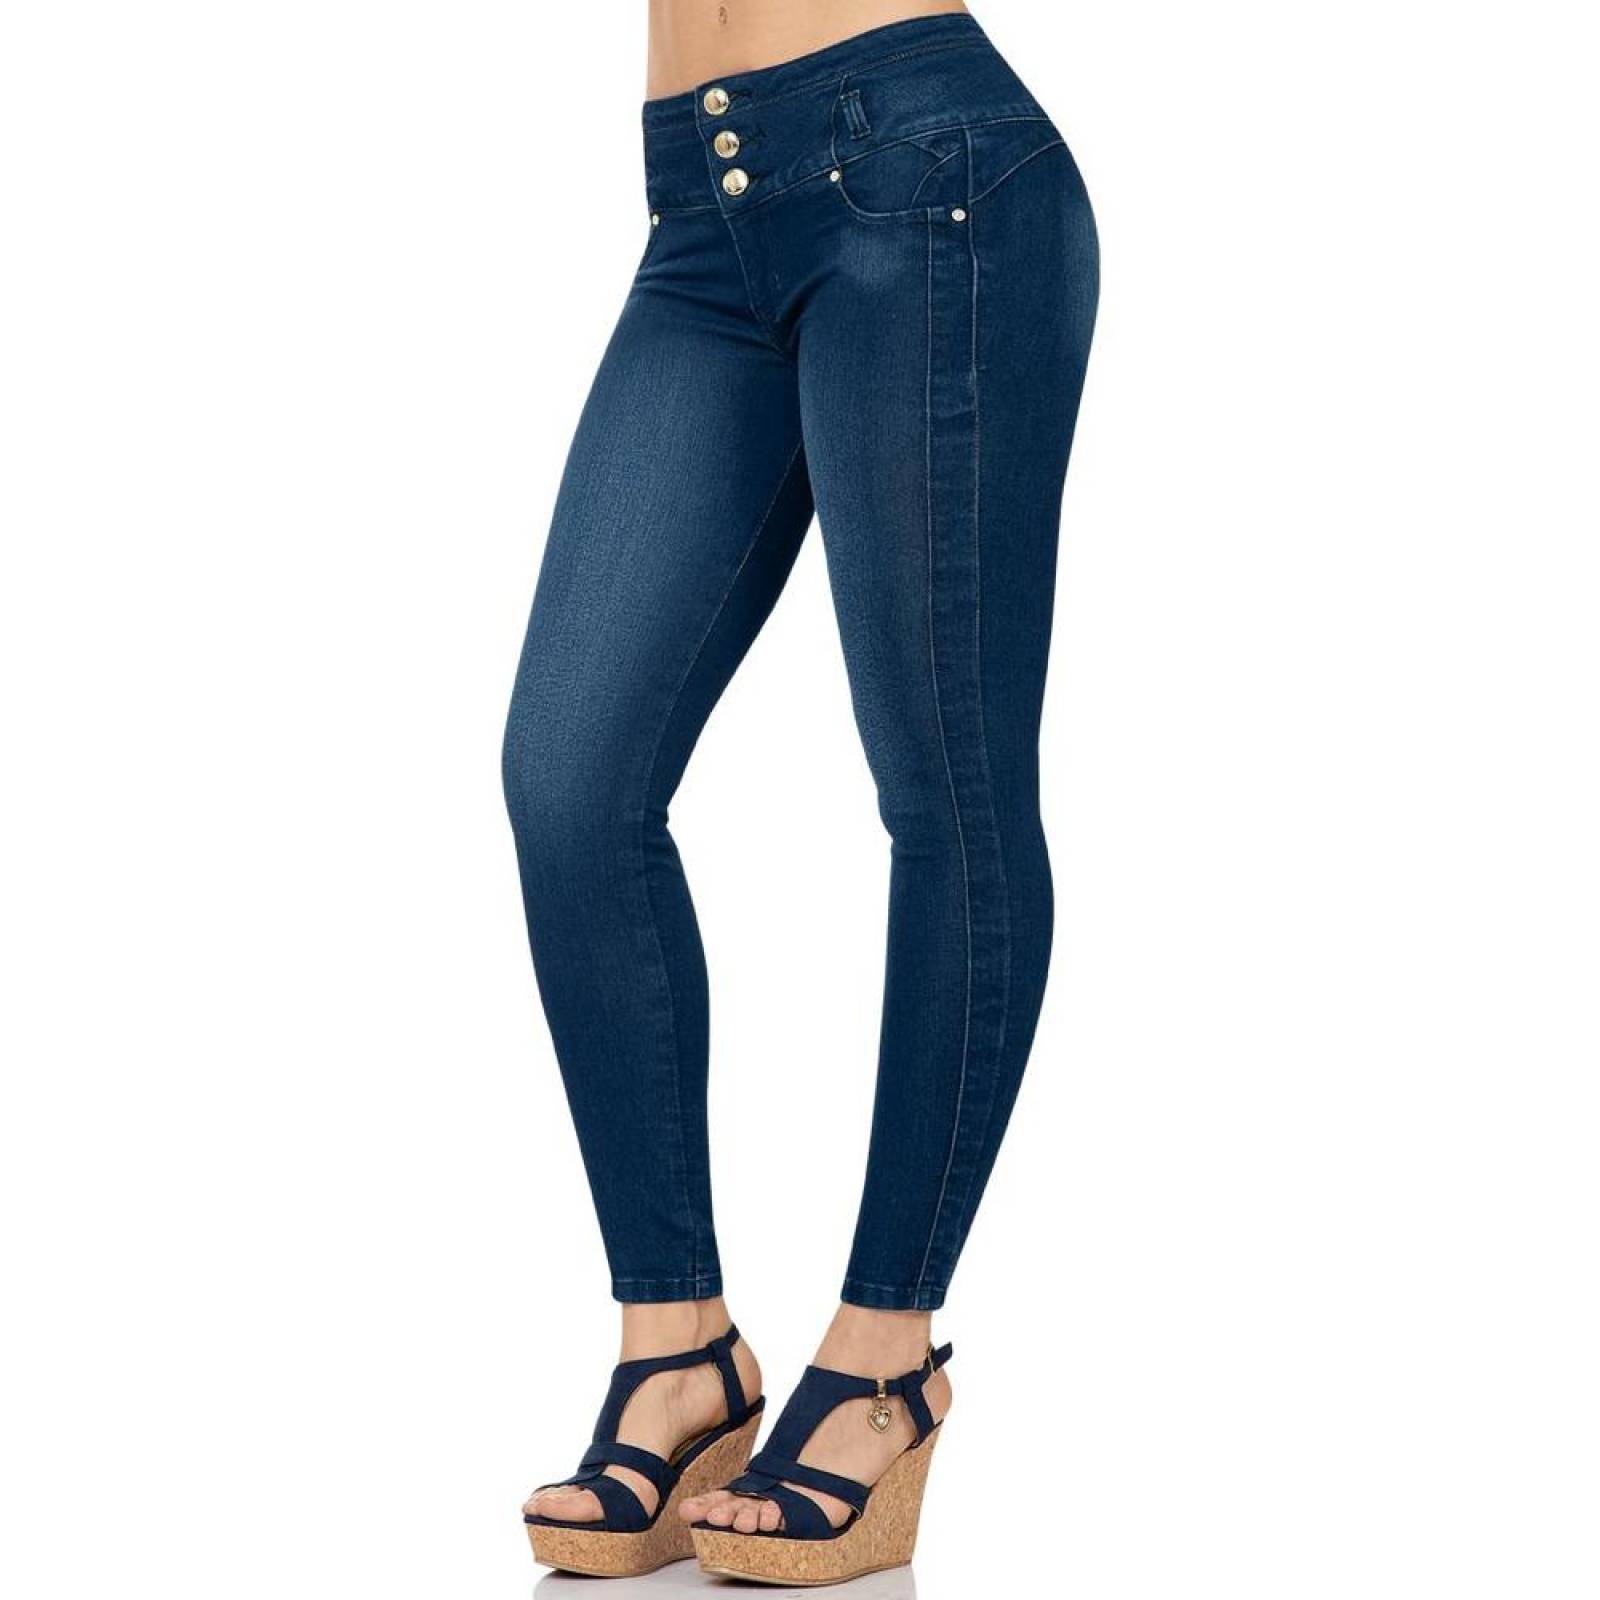 Jeans Moda Mujer Salvaje Tentación Indigo 63103307 Mezclilla Stretch 